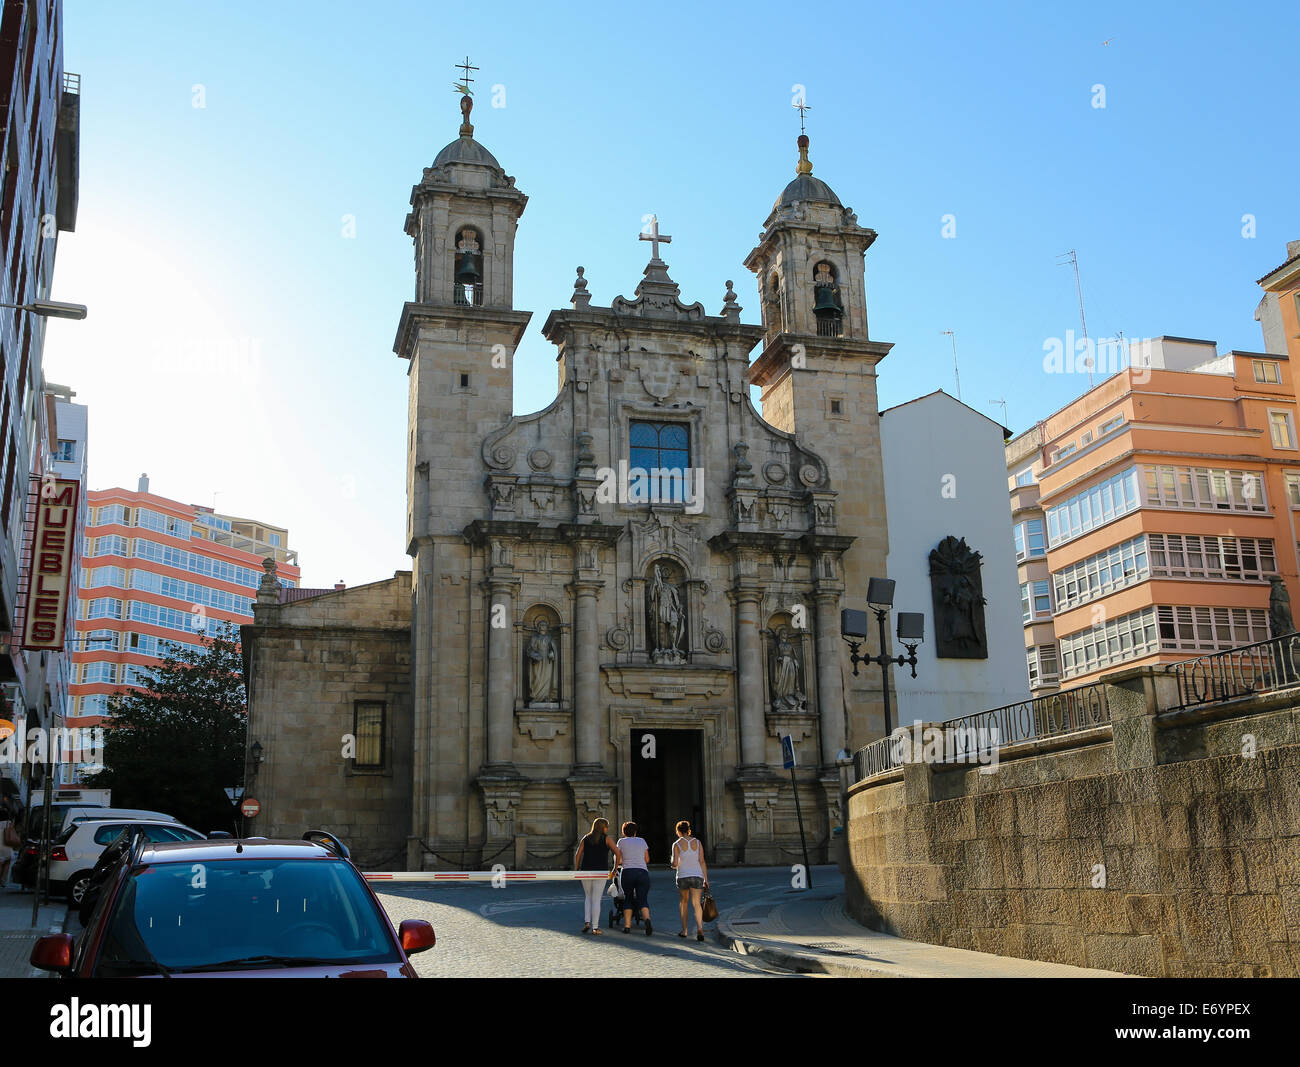 Iglesia de San Jorge oder Kirche des Heiligen Georg ist im barocken Stil und ein Wahrzeichen von A Coruna, Galicien, Spanien gebaut. Stockfoto